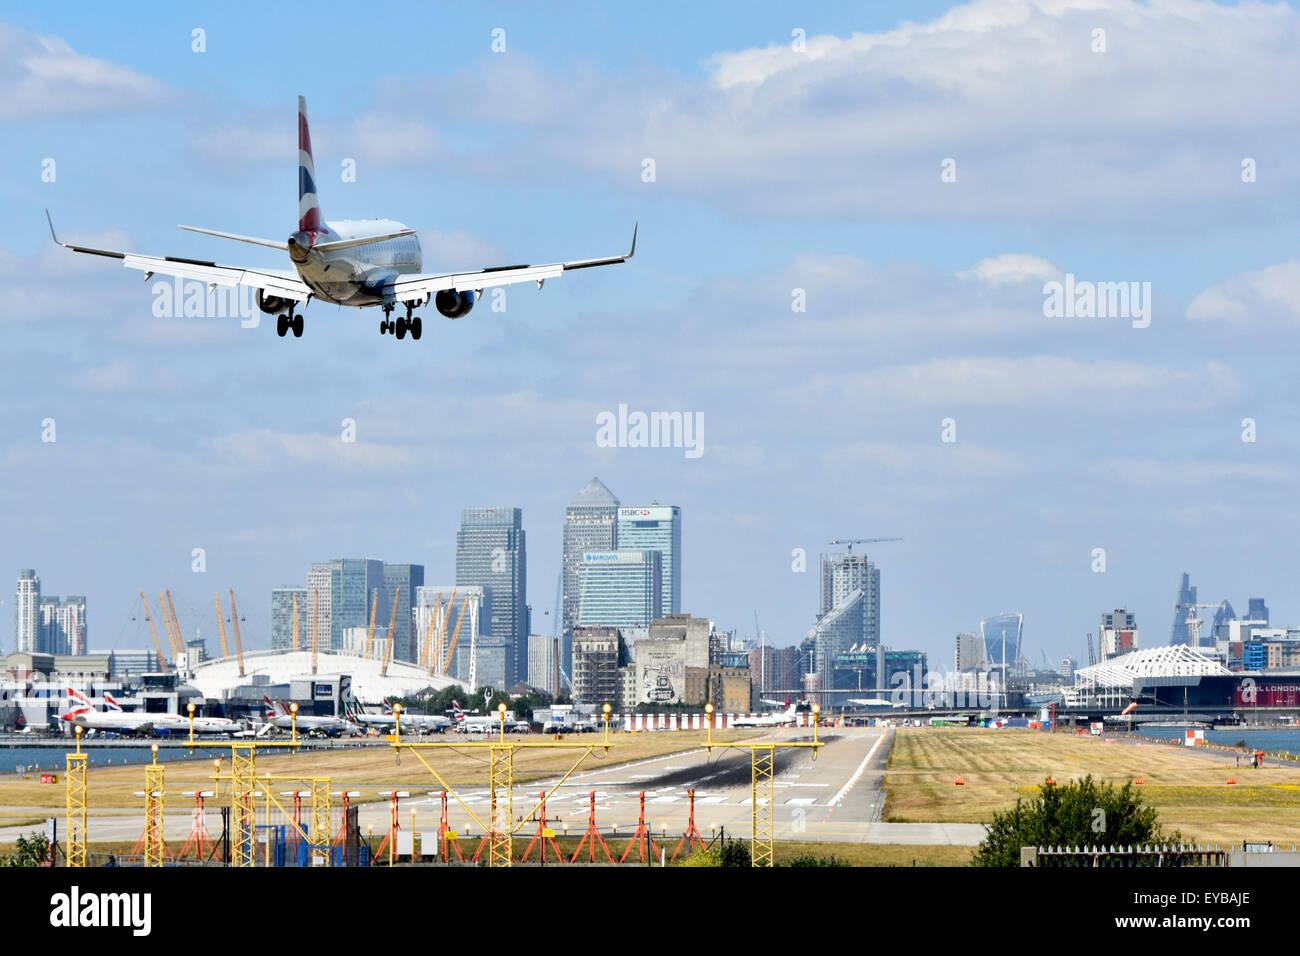 British Airways Flugzeug Landung Flughafen London City Newham mit O2 Arena & Canary Wharf in London Docklands skyline Jenseits in Tower Hamlets England Großbritannien Stockfoto